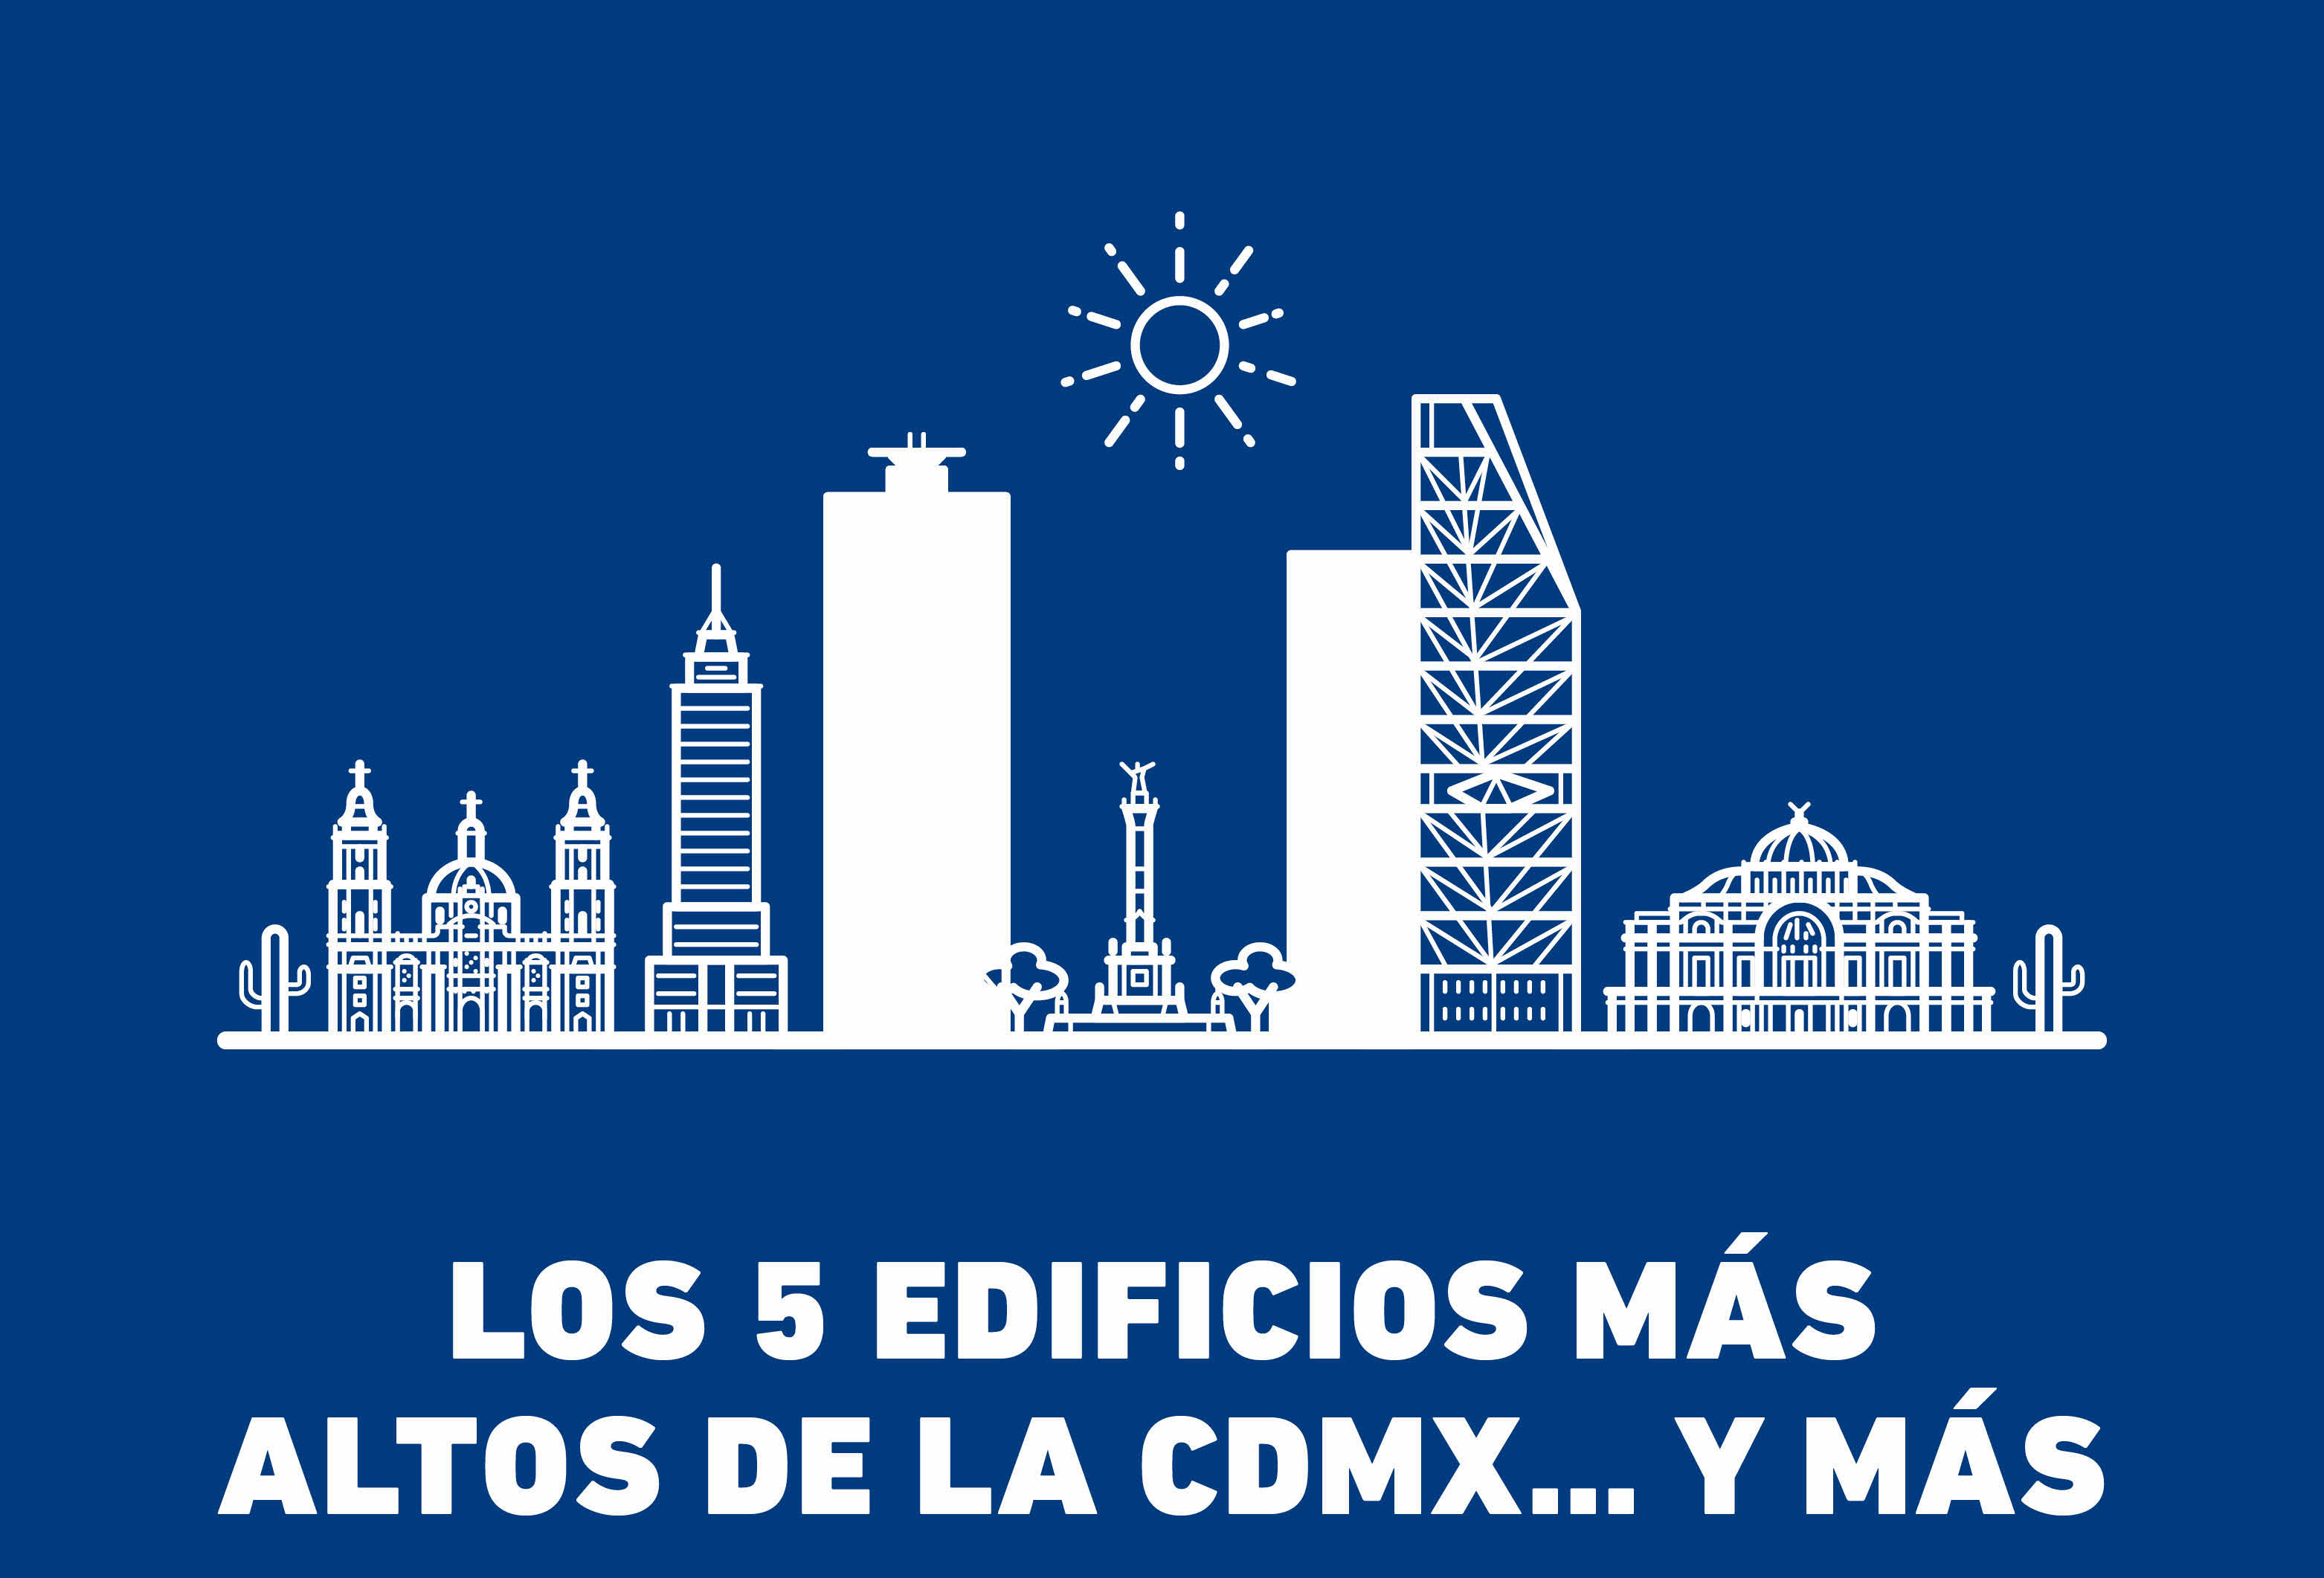 ¿Sabes cuáles son los 5 edificios más altos de la CDMX? Spoiler: ¡No es la Torre Latinoamérica! Además te decimos cual es el más elevado del país.